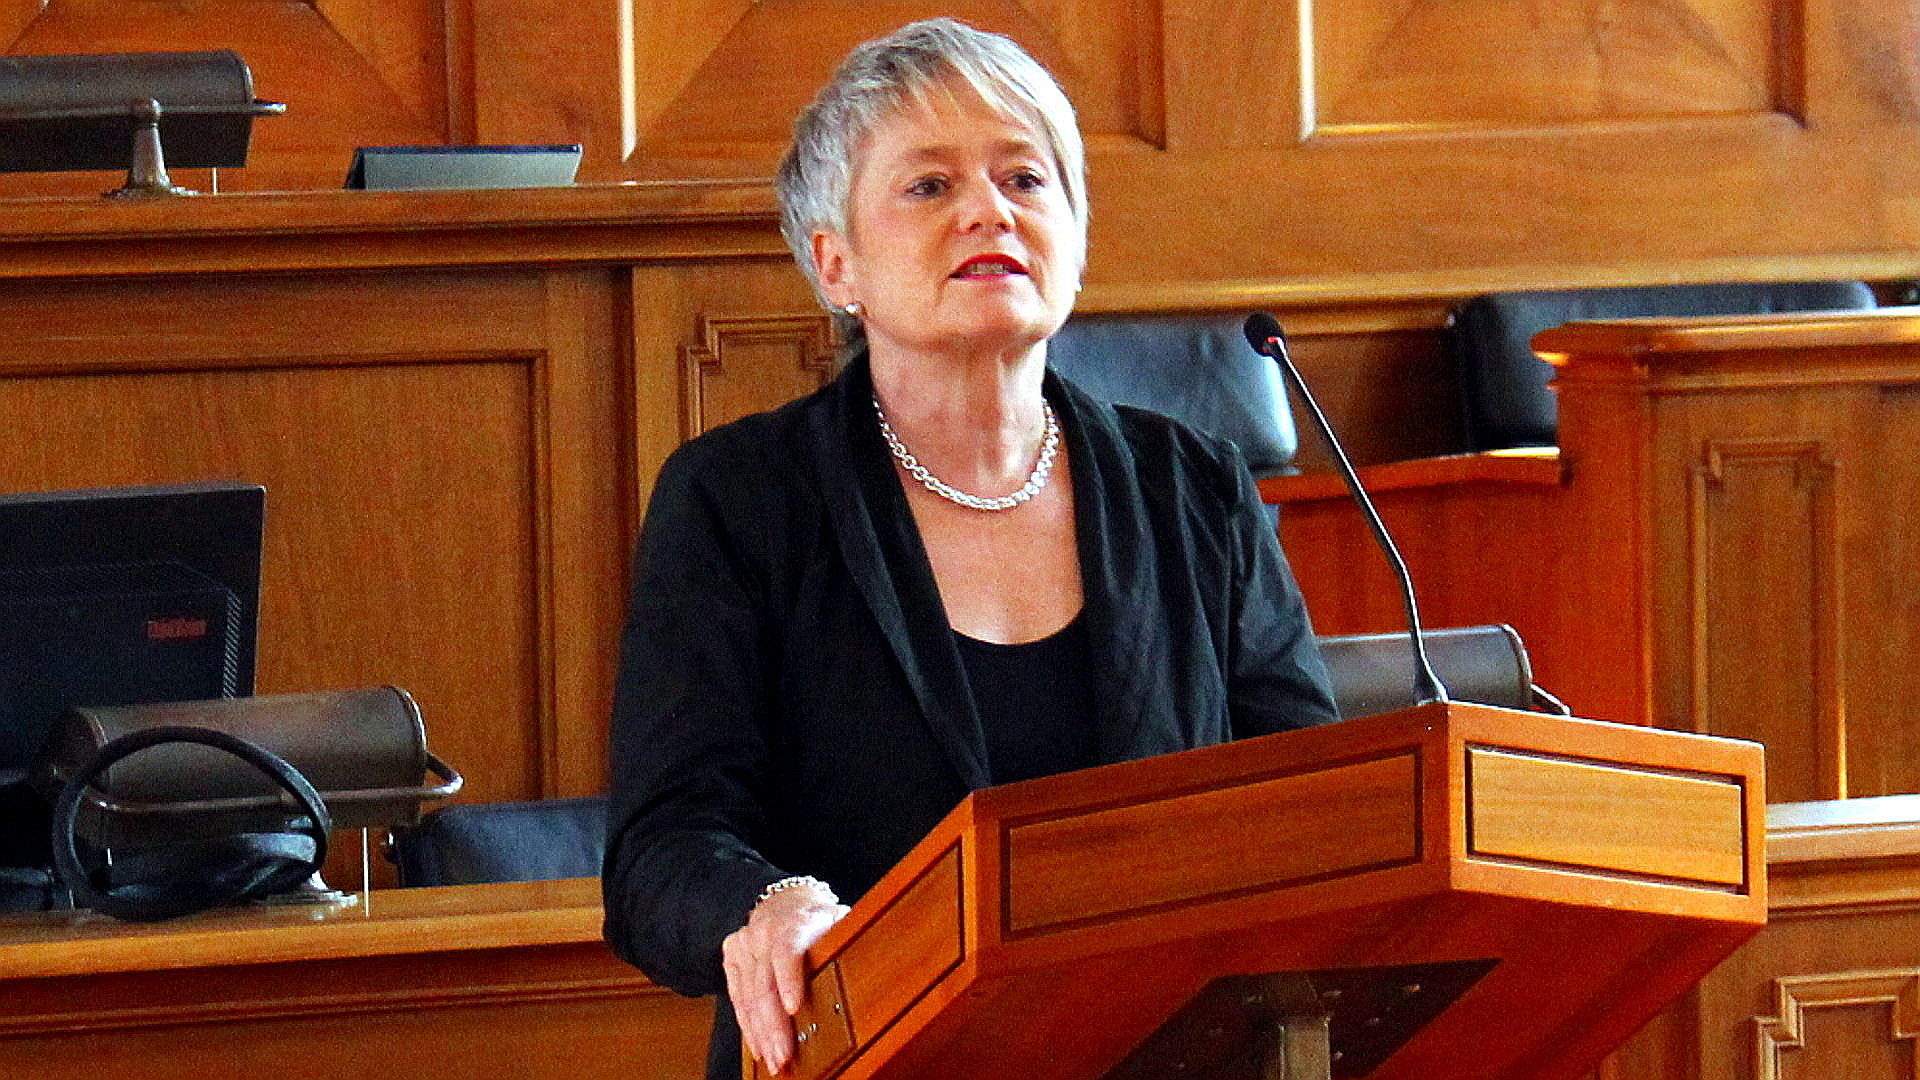 Jacqueline Fehr